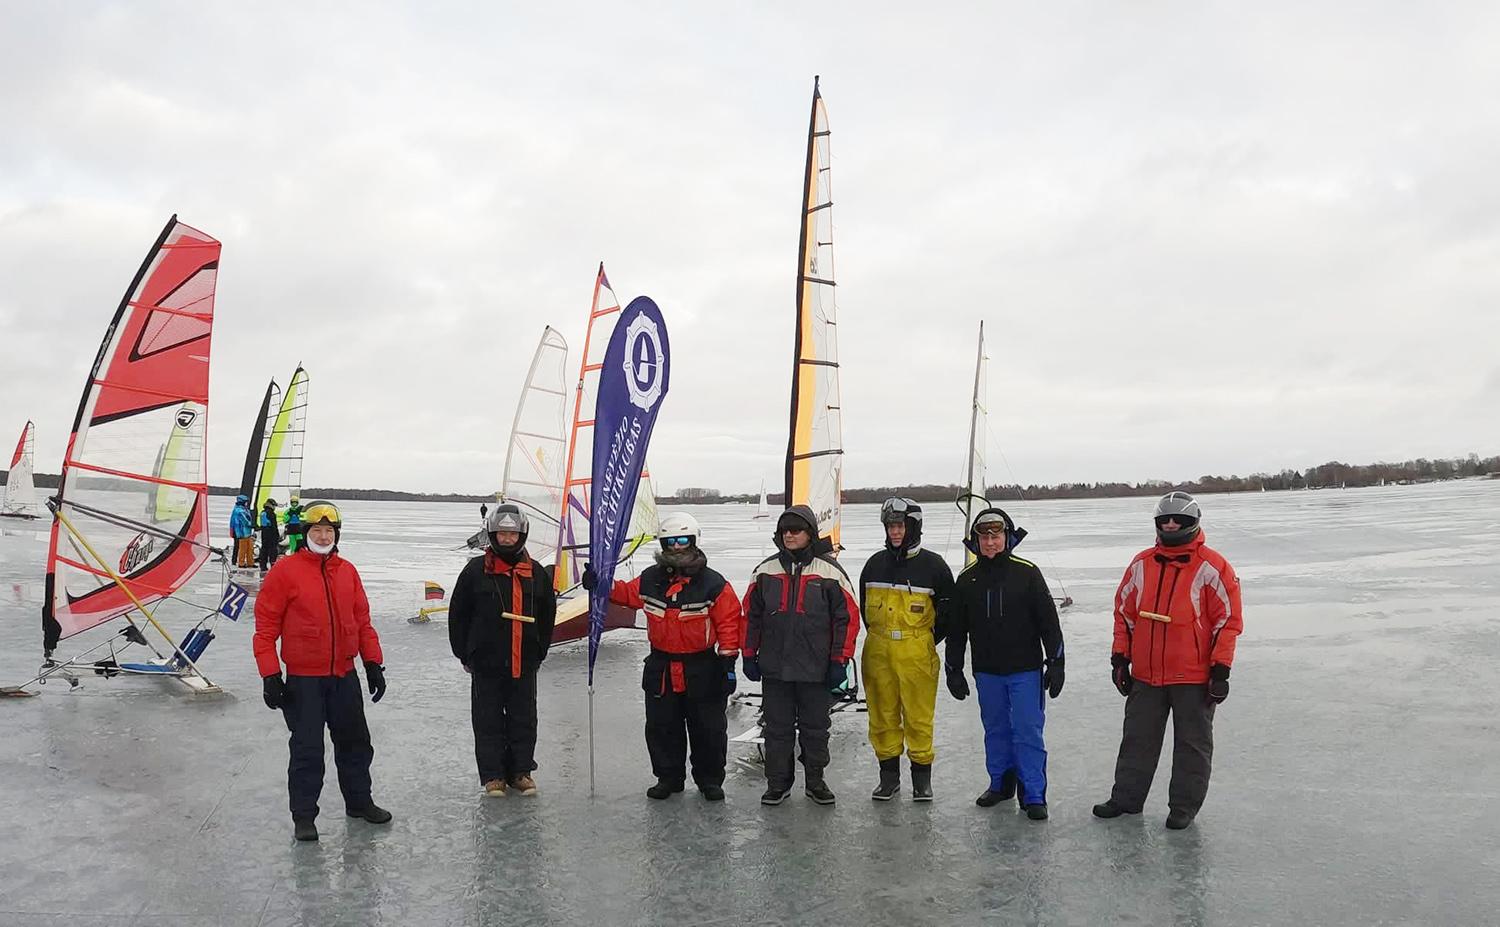 Ledo jachtų čempionate sėkmė lydėjo ukmergiškį / Ledo jachtų čempionate ant Rėkyvos ežero varžėsi šio sporto entuziastai.